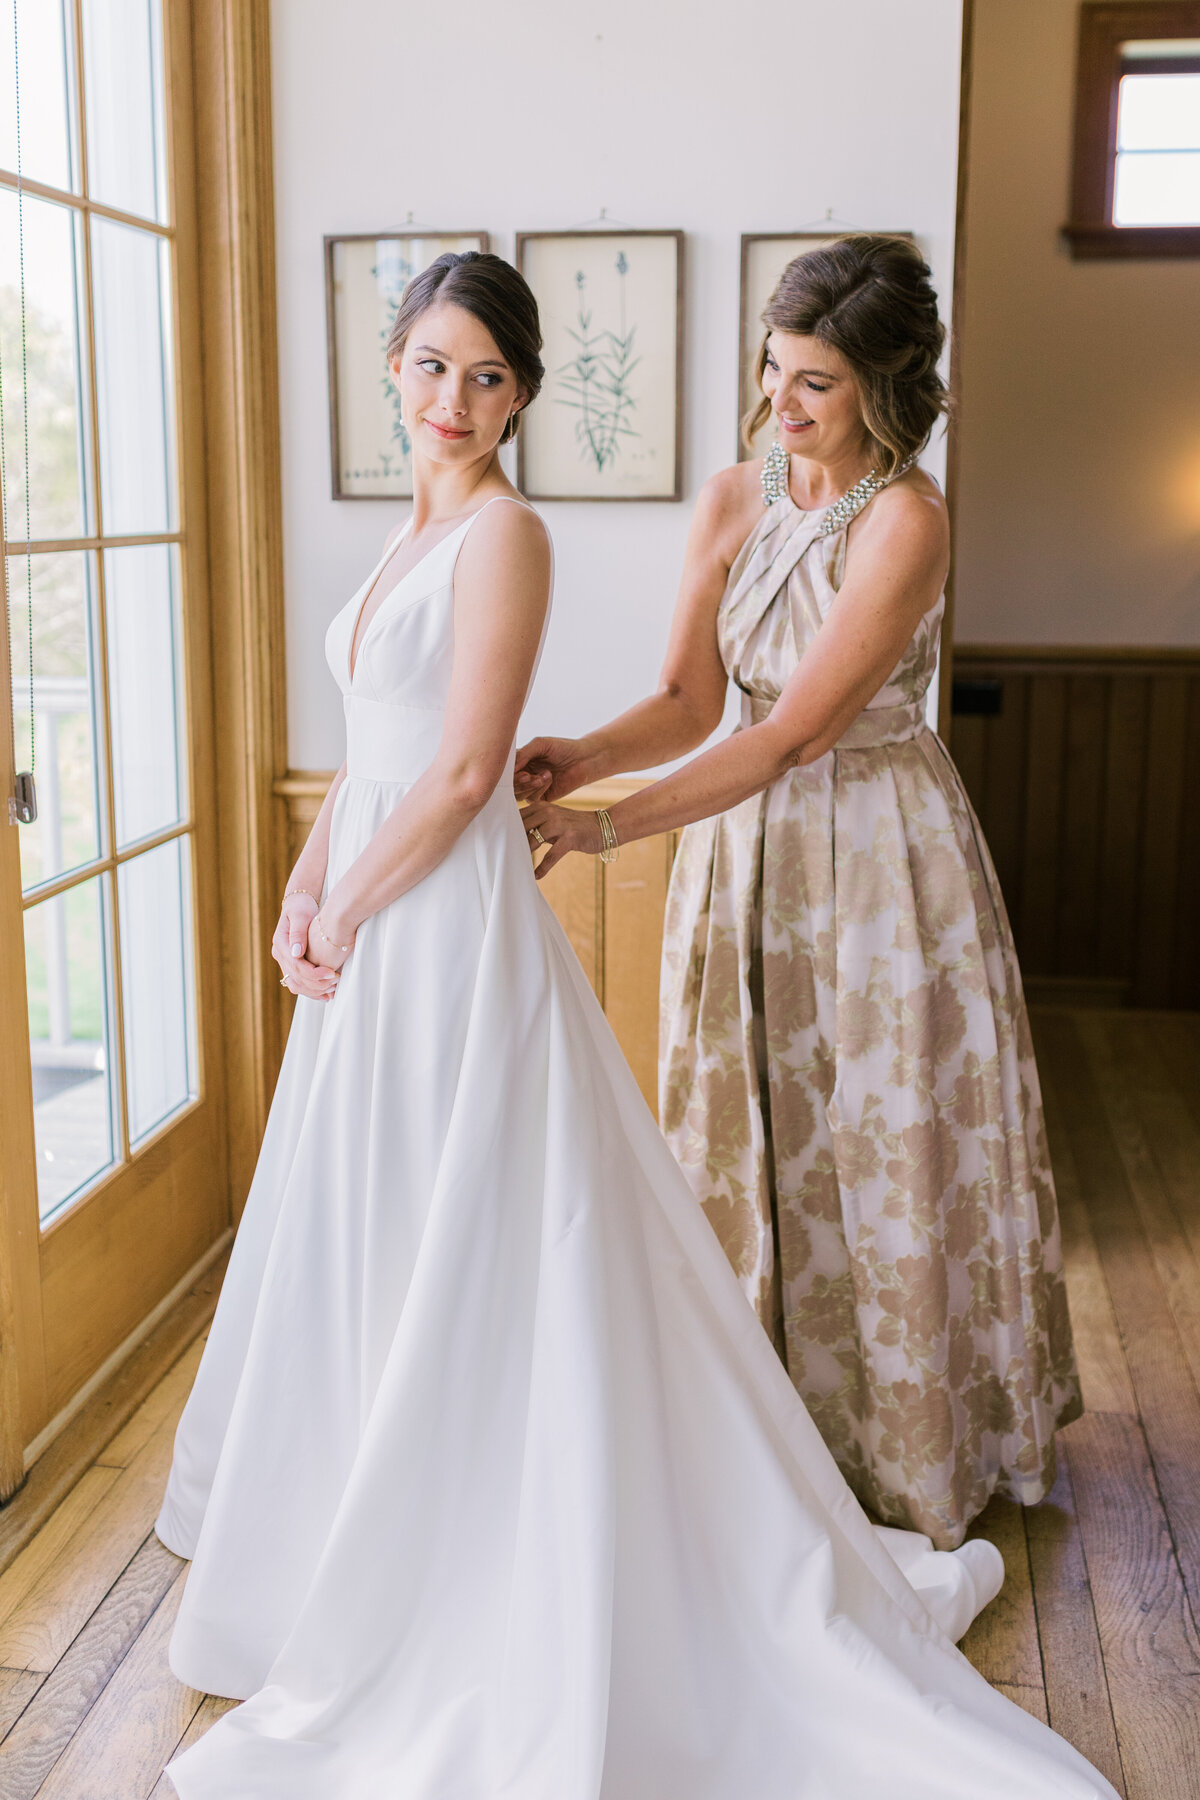 Elizabeth&Dahler_Wedding2022_CastleCiderHill_AngelikaJohnsPhotography-4